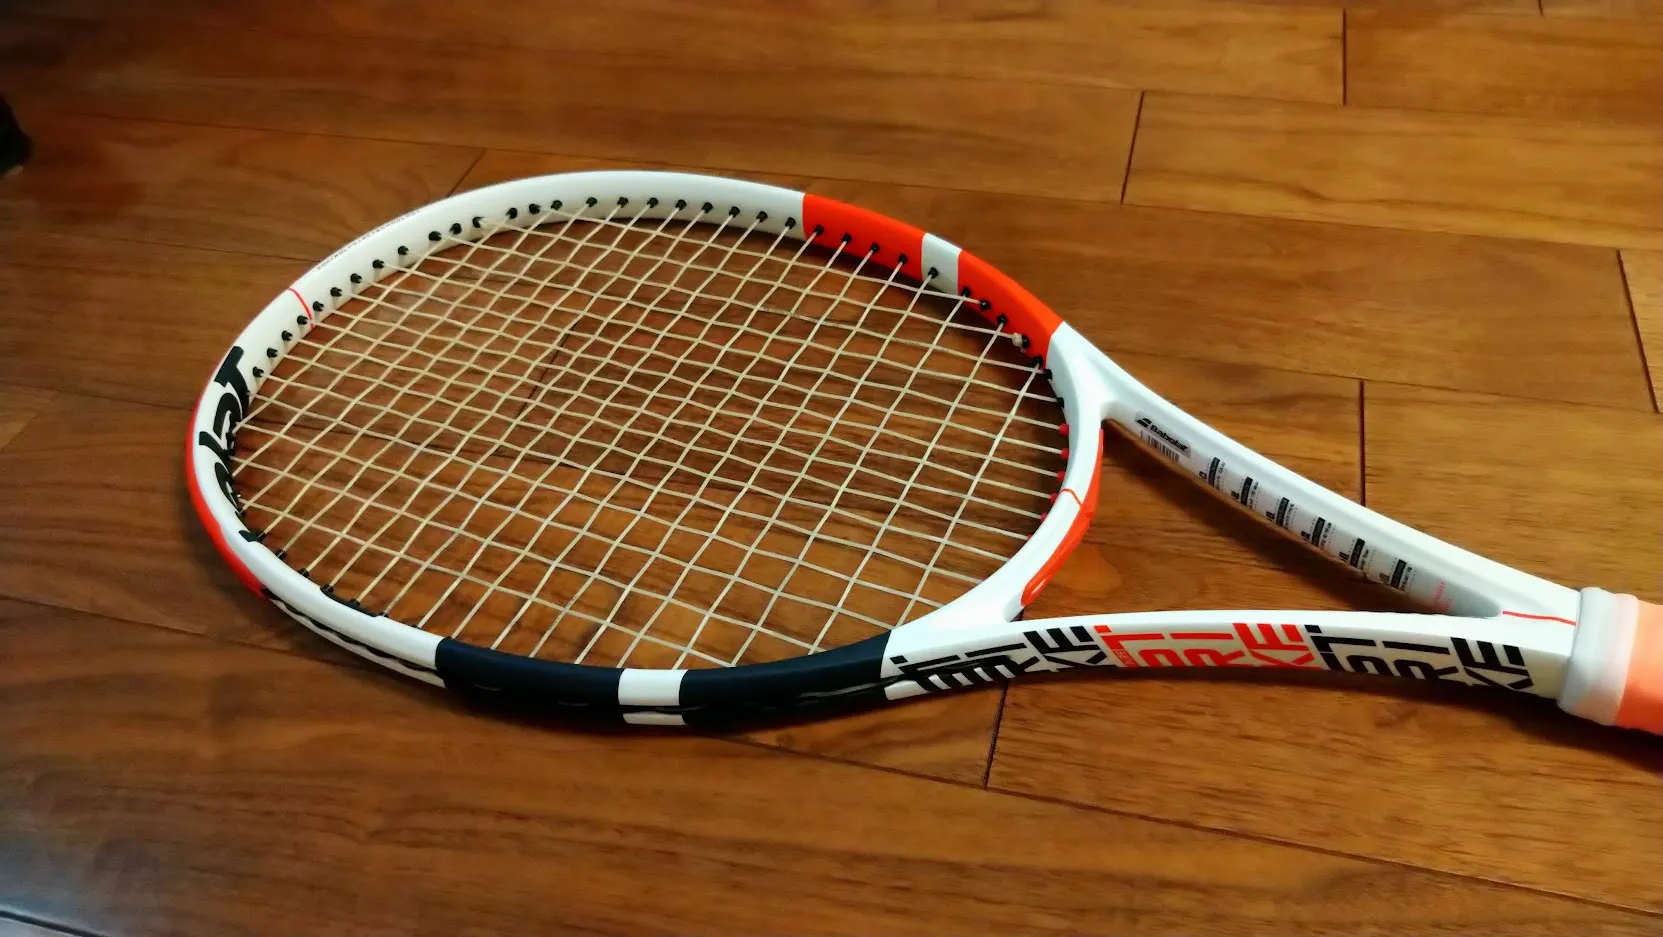 バボラ (Babolat) テニスラケット PURE STRIKE100 (ピュアストライク100) U NC ストリングなし ホワイト レ